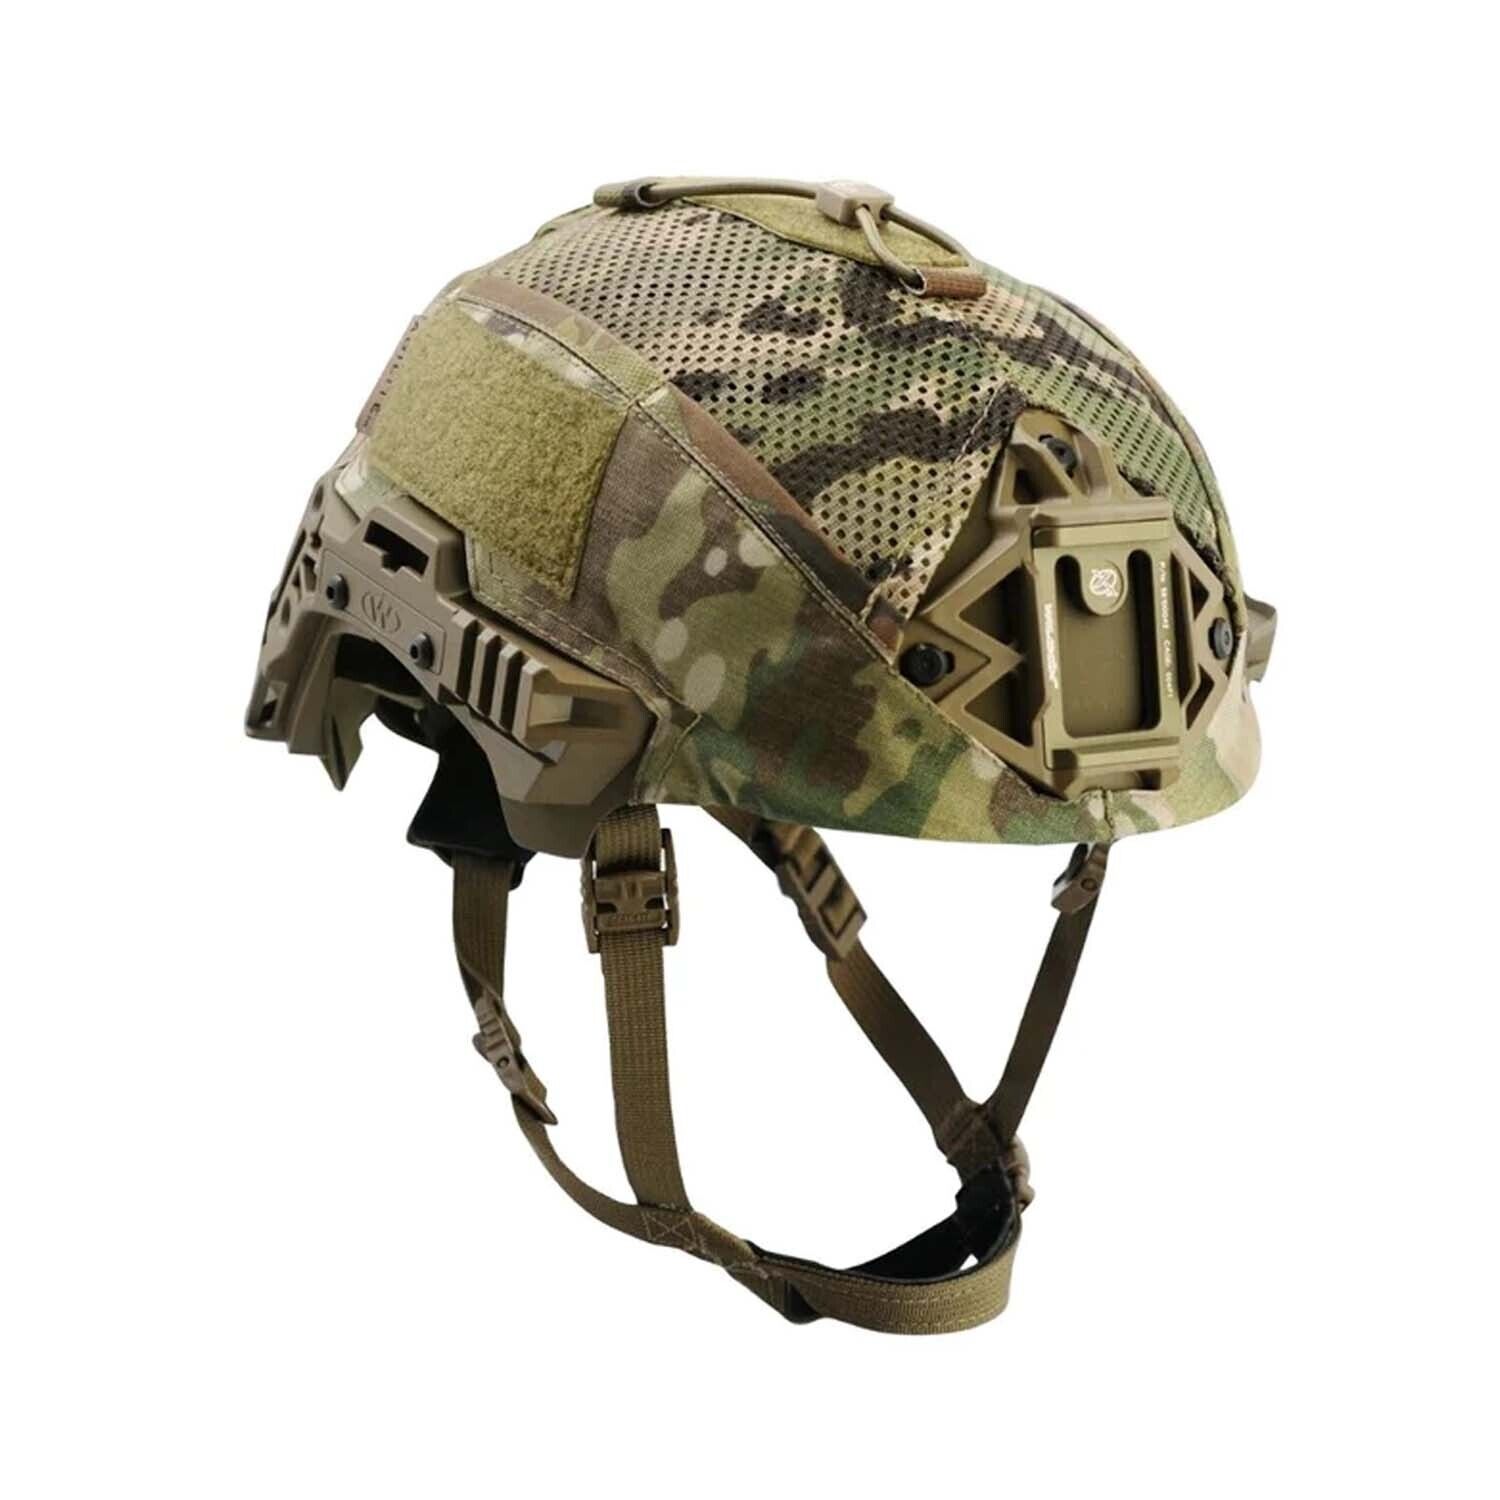 Agilite Helmet Cover Team Wendy EXFIL BUMP Carbon, multicam, size 1 M/L